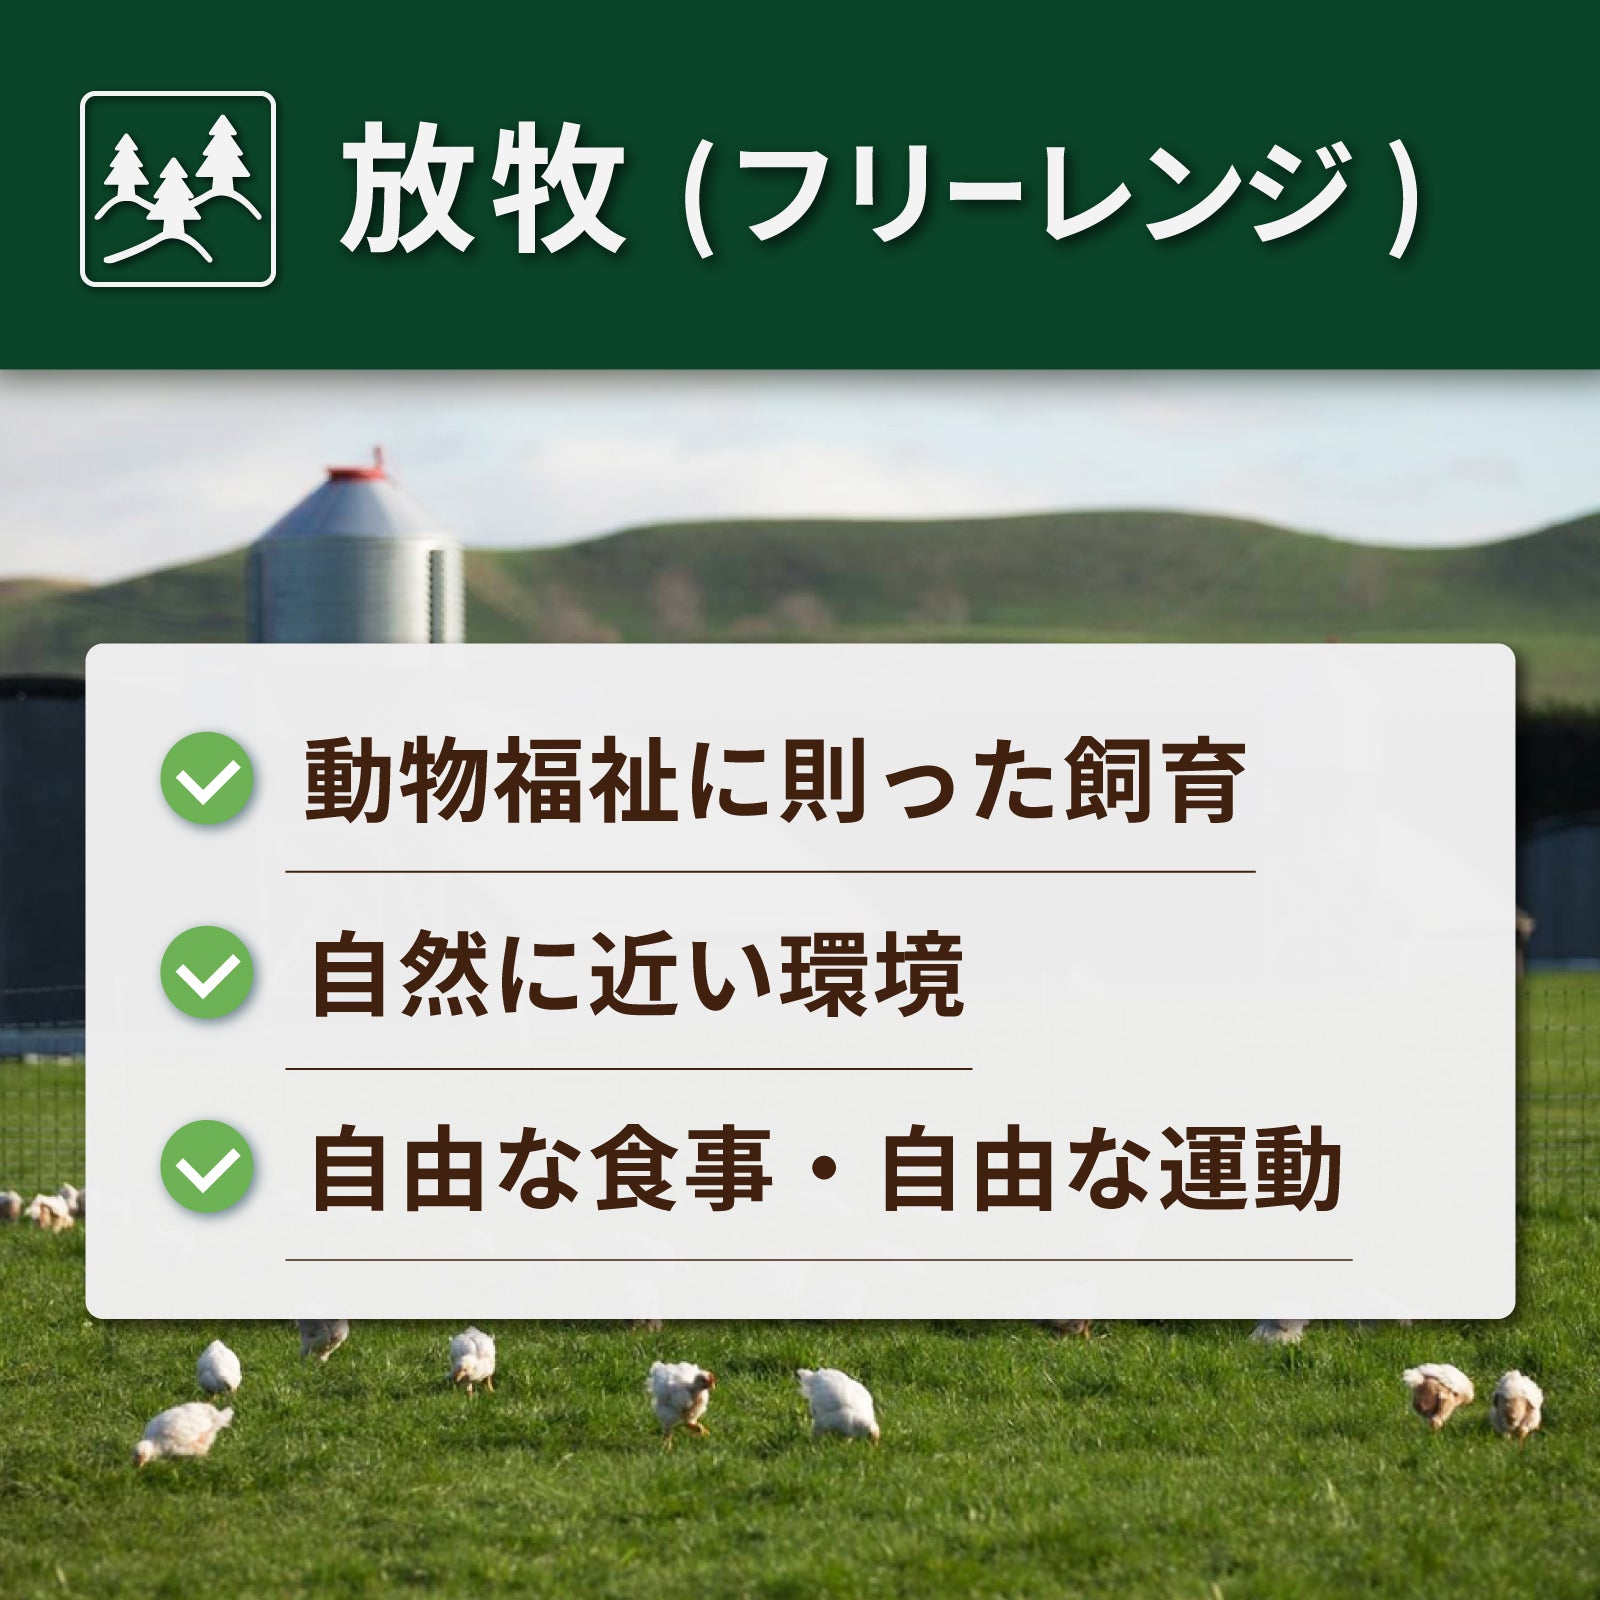 無添加・砂糖不使用 放牧豚 生ソーセージ  プレーン 北海道産 (5本) ホライズンファームズ